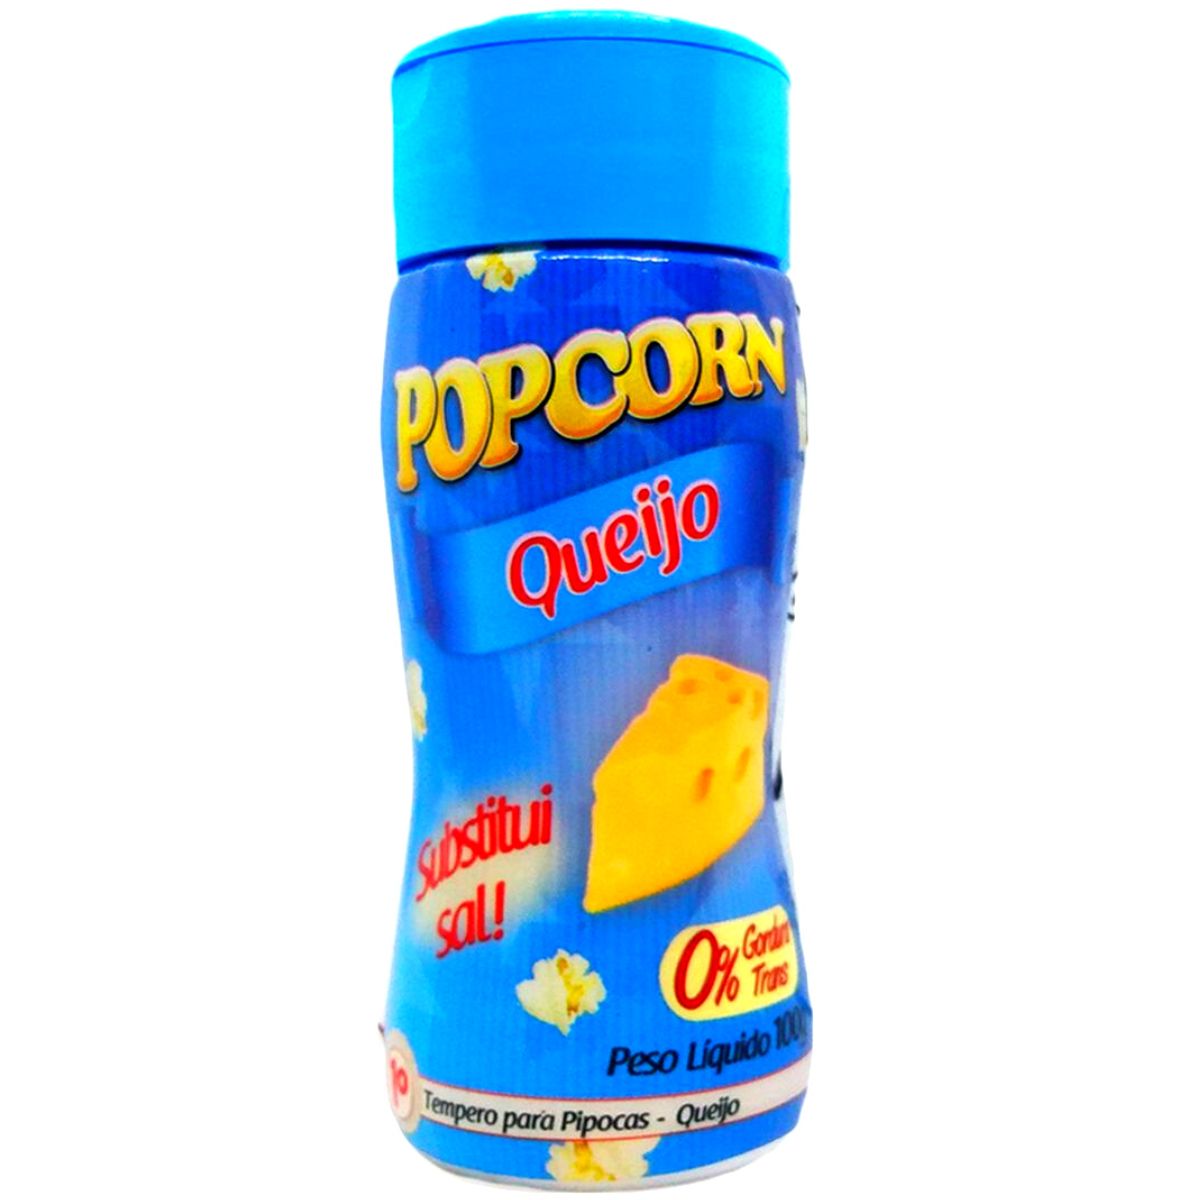 Combo Tempero Para Pipoca Popcorn 3 Sabores - Manteiga, Queijo e Parmesão e Alho